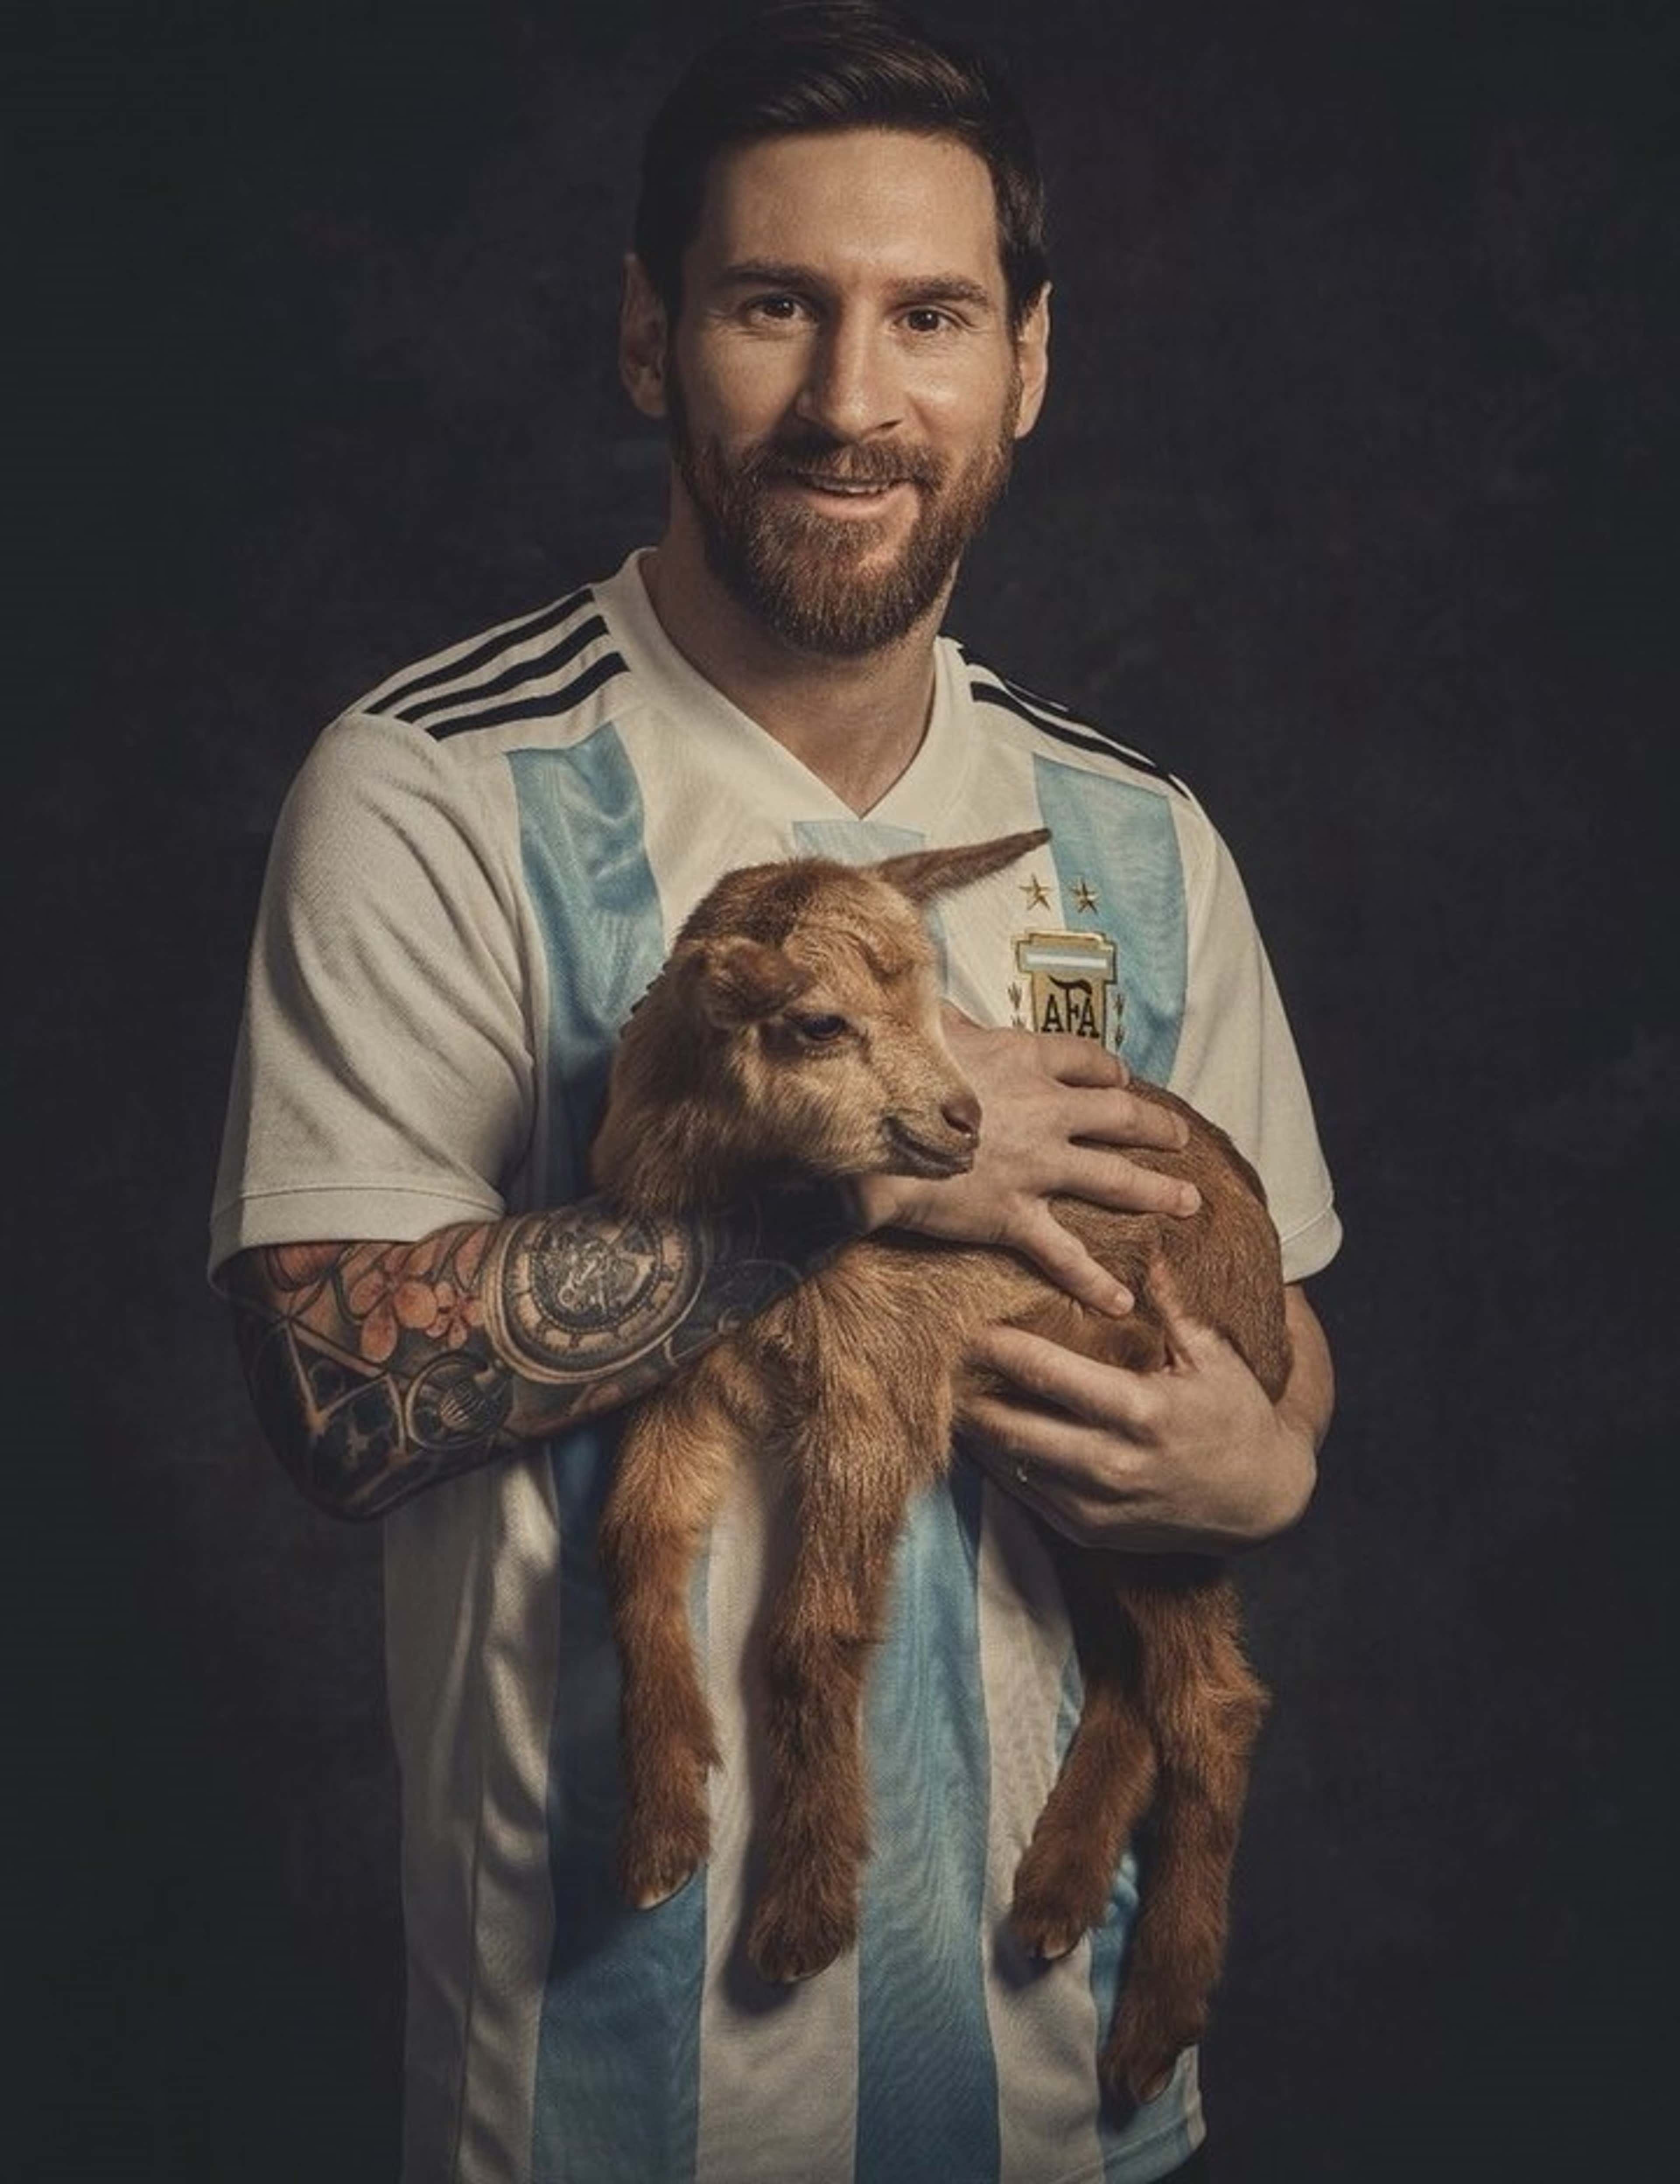 GOAT Lionel Messi